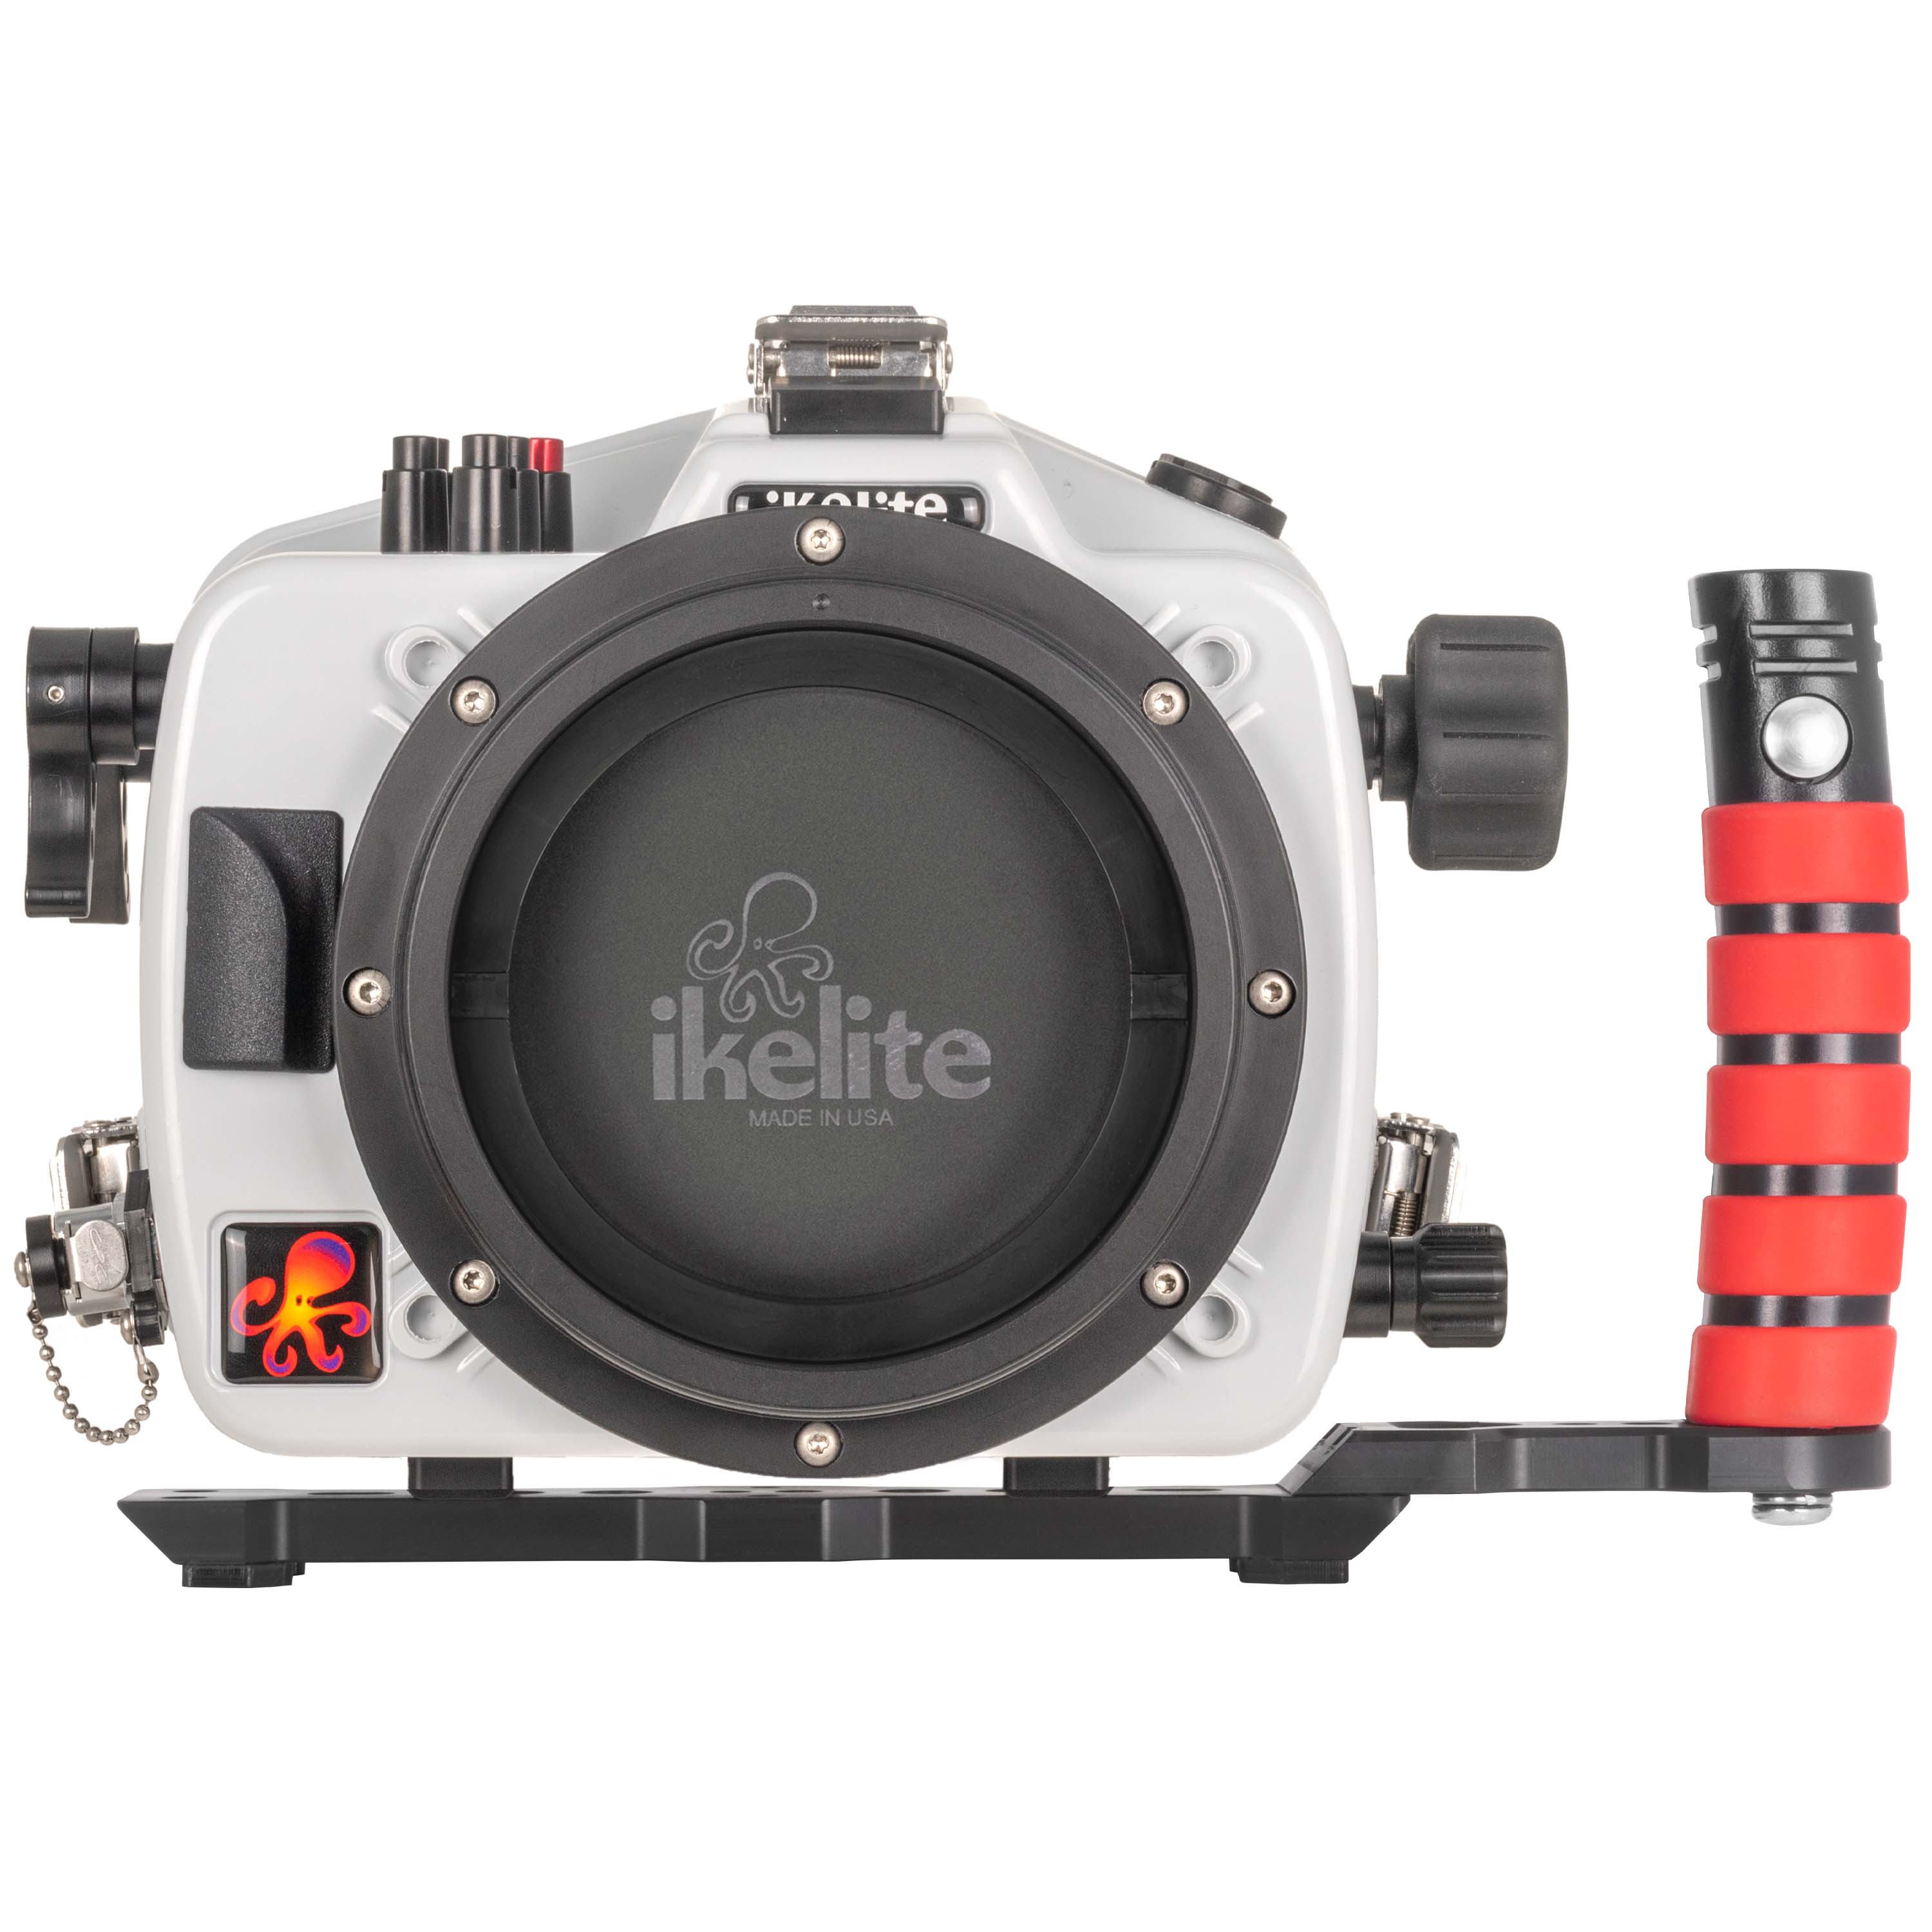 200DL Underwater Housing for Sony FX3, FX30 Digital Cinema Cameras